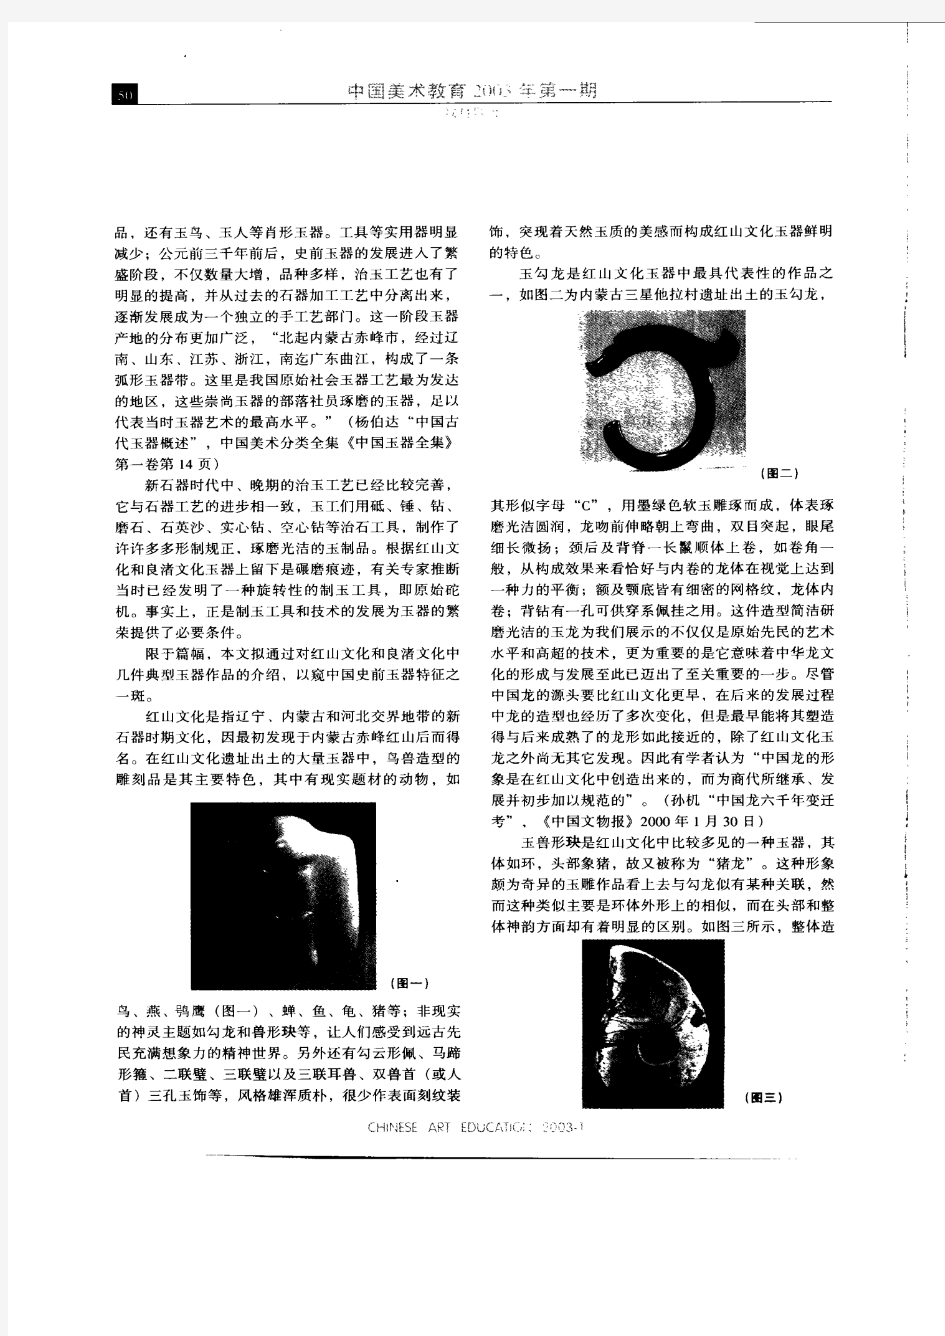 史前玉器艺术简述-中国古代玉器艺术鉴赏